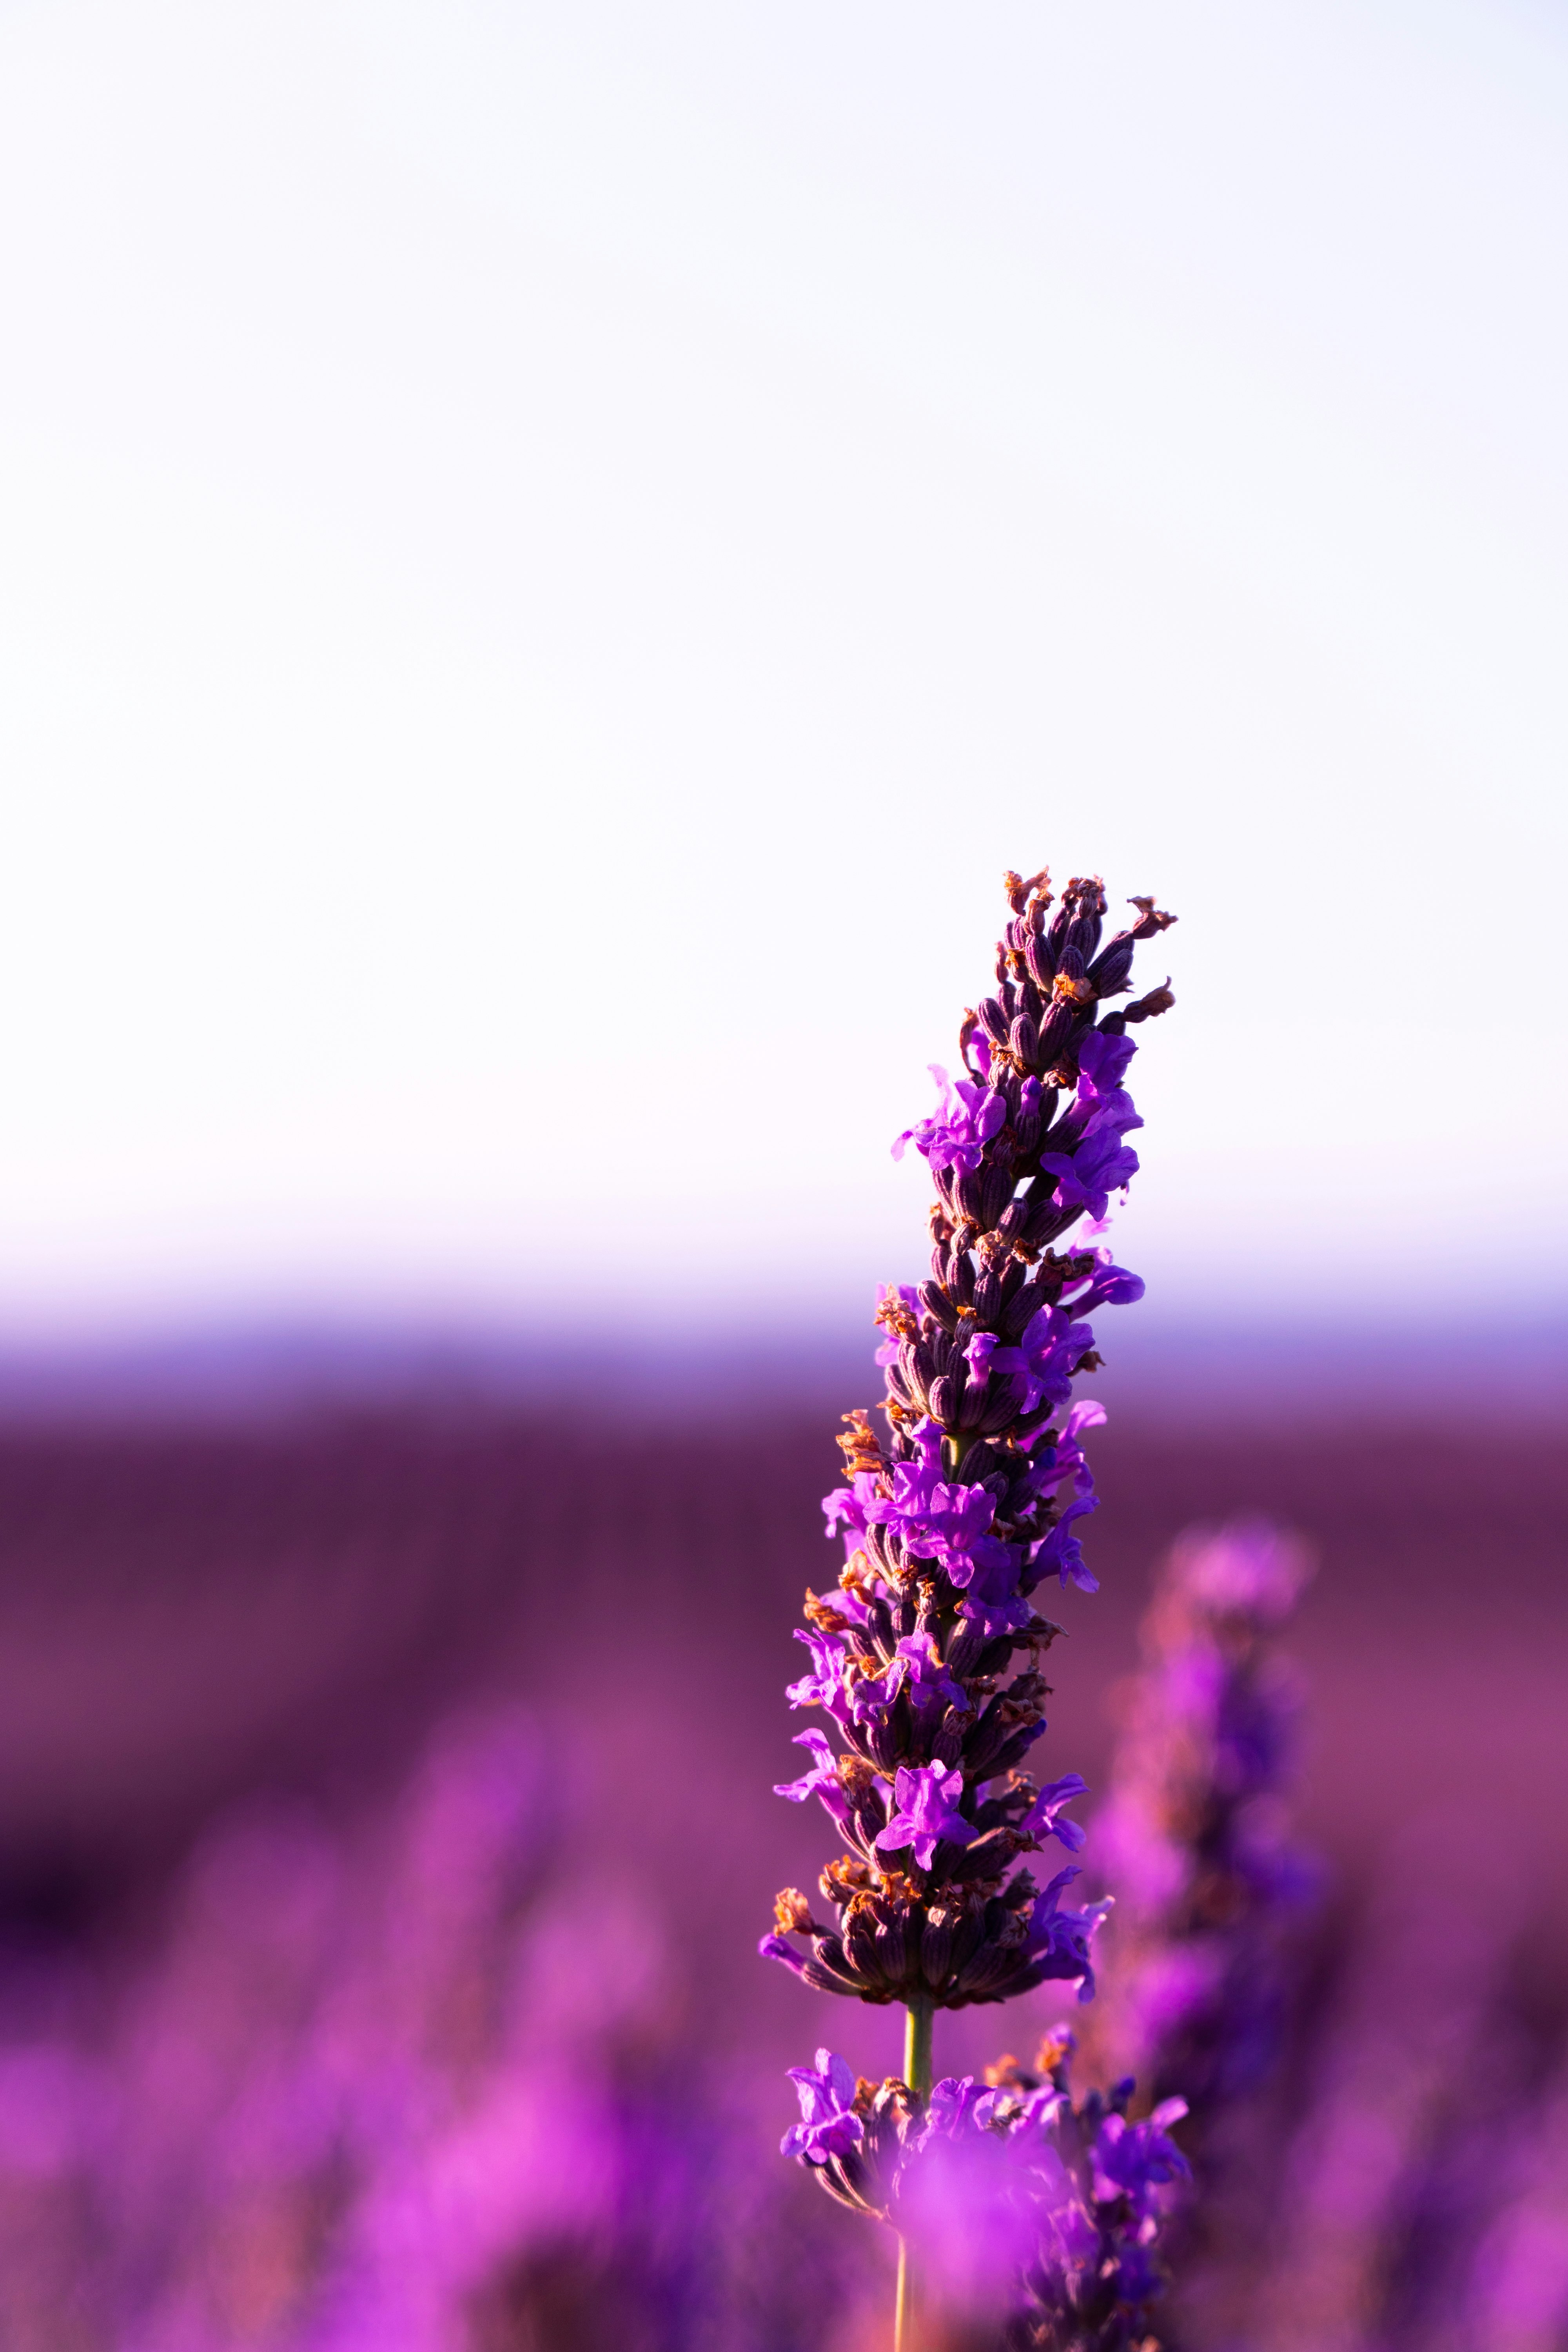 27 Lavender Pictures Download Free Images On Unsplash